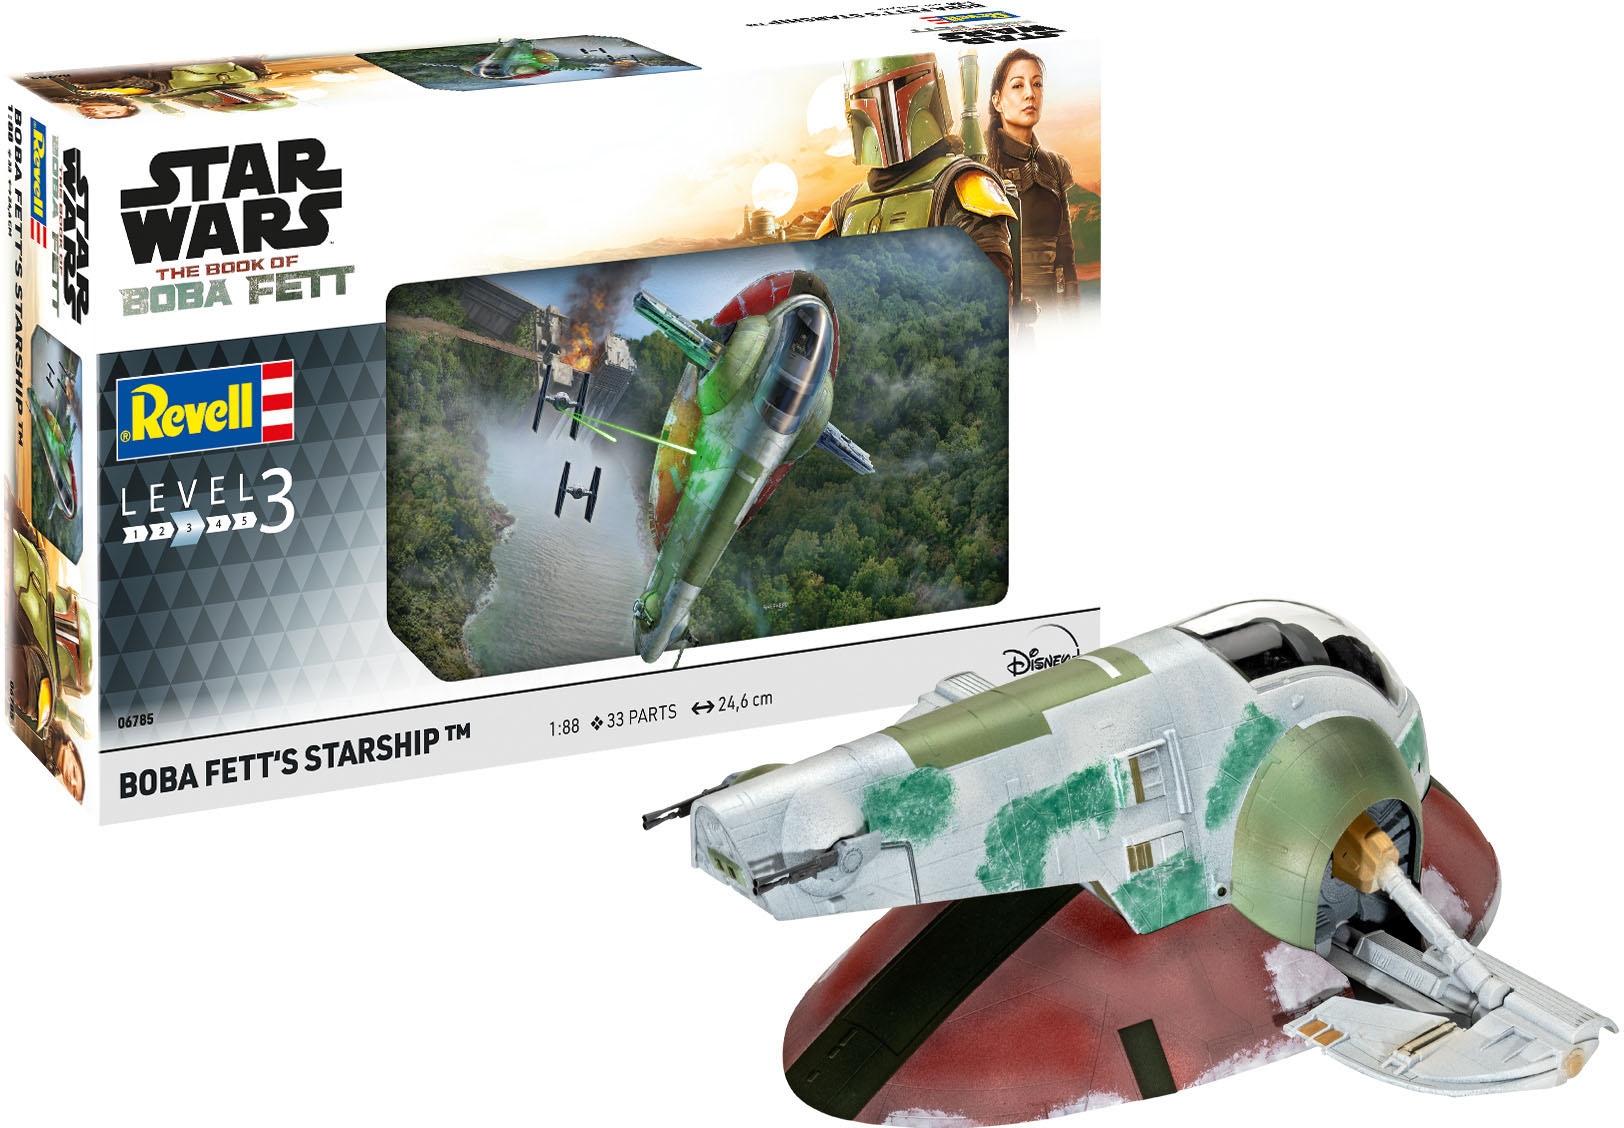 Modellbausatz »Star Wars - Boba Fett's Starship™«, 1;:88, Made in Europe